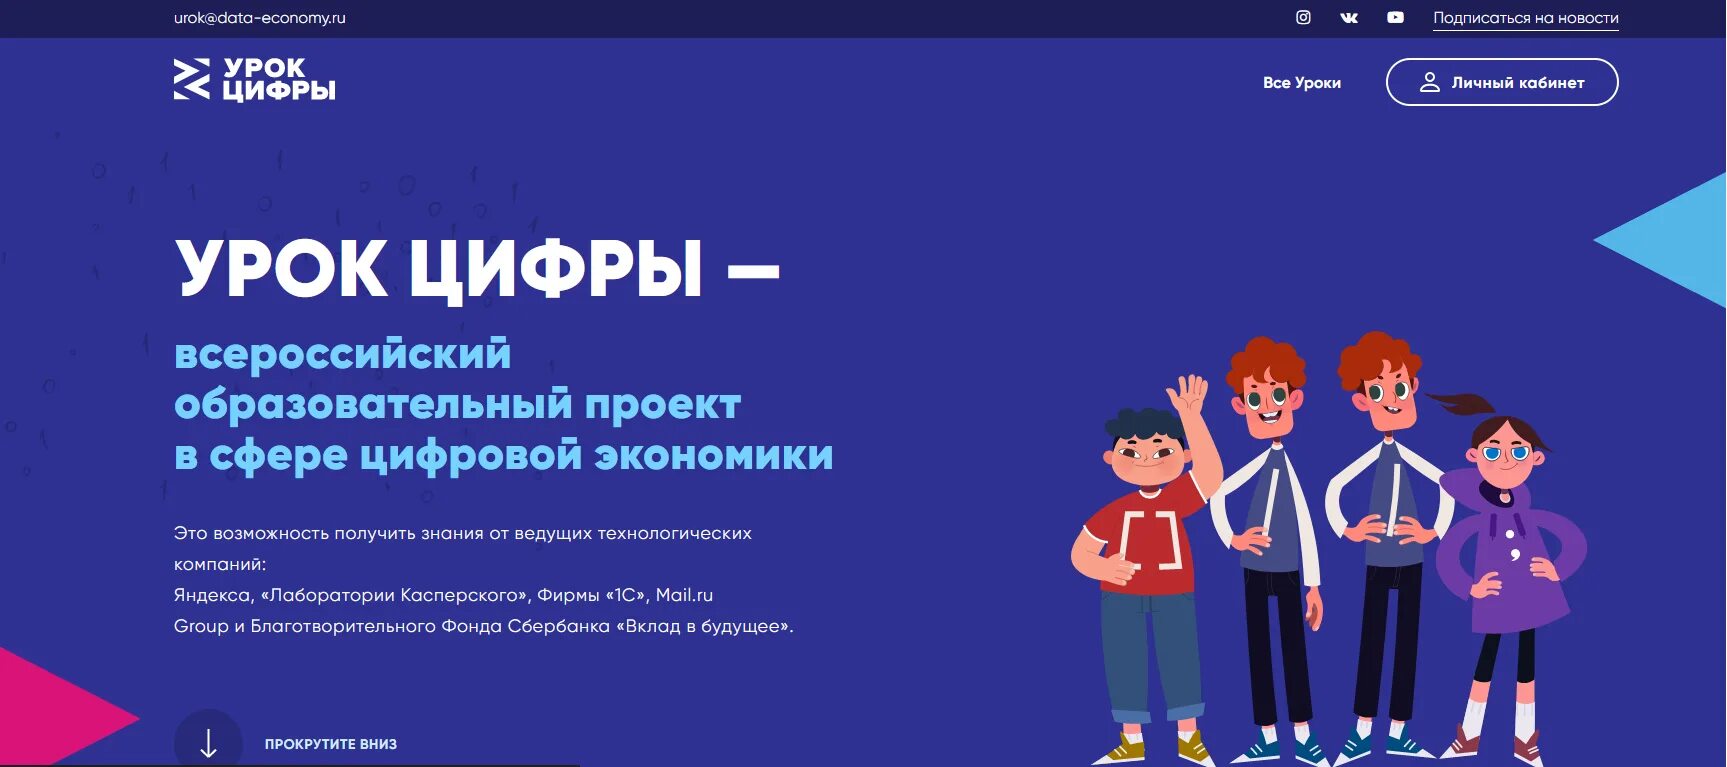 Урок цифры. Урок цифры — Всероссийский образовательный проект.... Урок цифры от Яндекса. Урок цифры логотип.